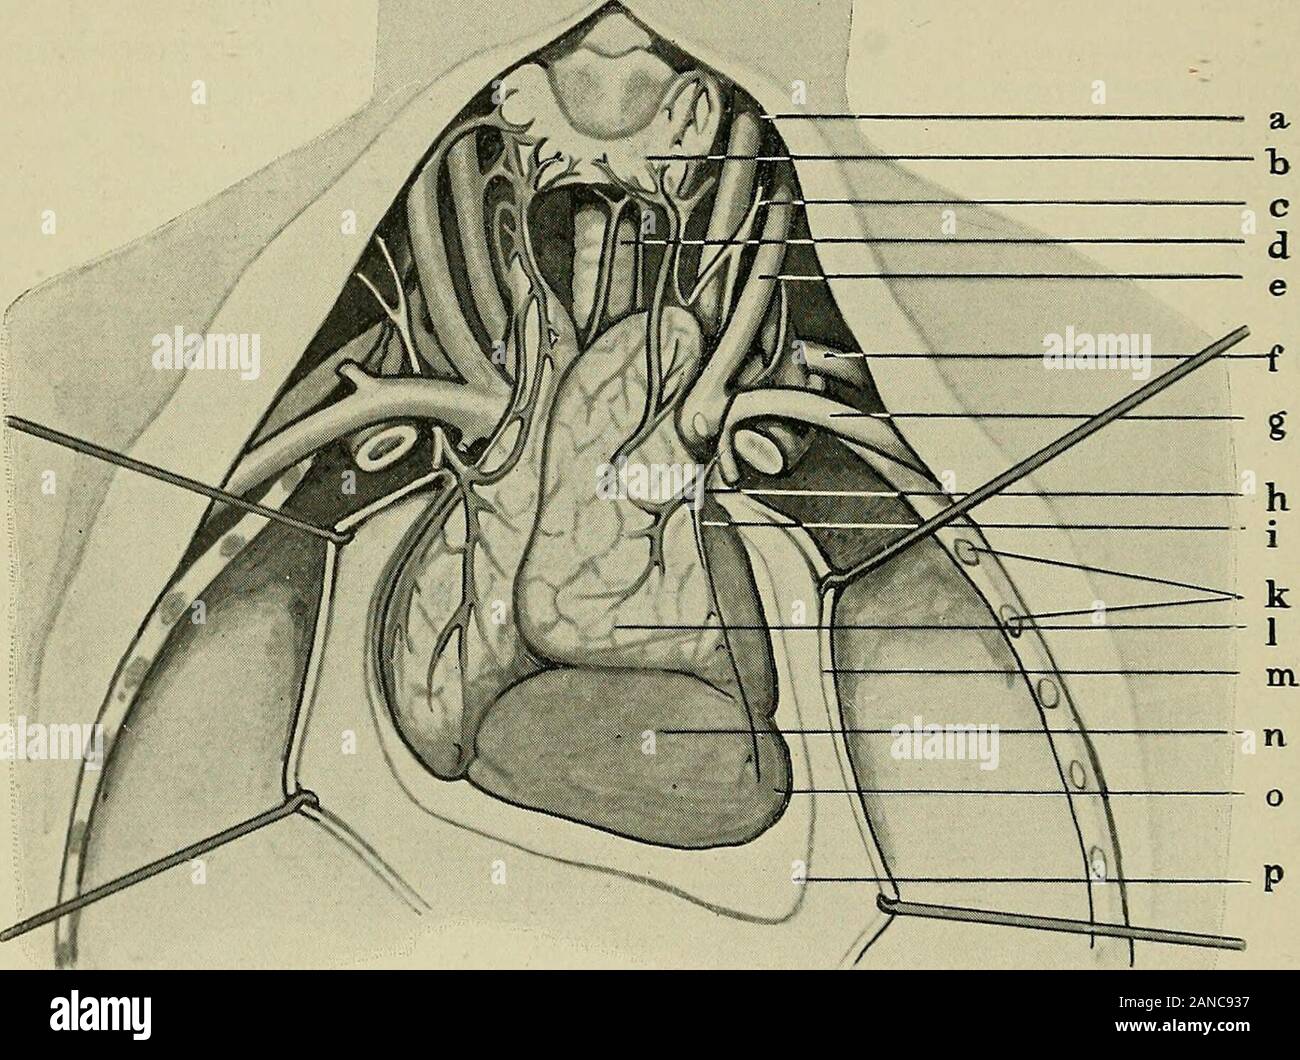 Chirurgie der Thymusdrüse . hlagstelle, weiter die Aorta ascen-dens, den Arcus aortae, greift auf die Lungenvenen über und kann hiernach Verdrängung der V. cava superior oder von links die Bifurkationder Trachea erreichen, sich sogar zwischen Trachea und Ösophagus ein- 30 Deskriptive und topographische Anatomie der Thymusdrüse. schieben. Sie folgt weiter der schräg nach rechts absteigenden V. ano-nyma sinistra. Mit dieser ist sie besonders fest verwachsen. Rechts trittsie nach der V. cava superior mit der V. anonyma dextra in Berührung.Oberhalb der V. anonyma sinistra liegt sie unmittelbar auf Stock Photo